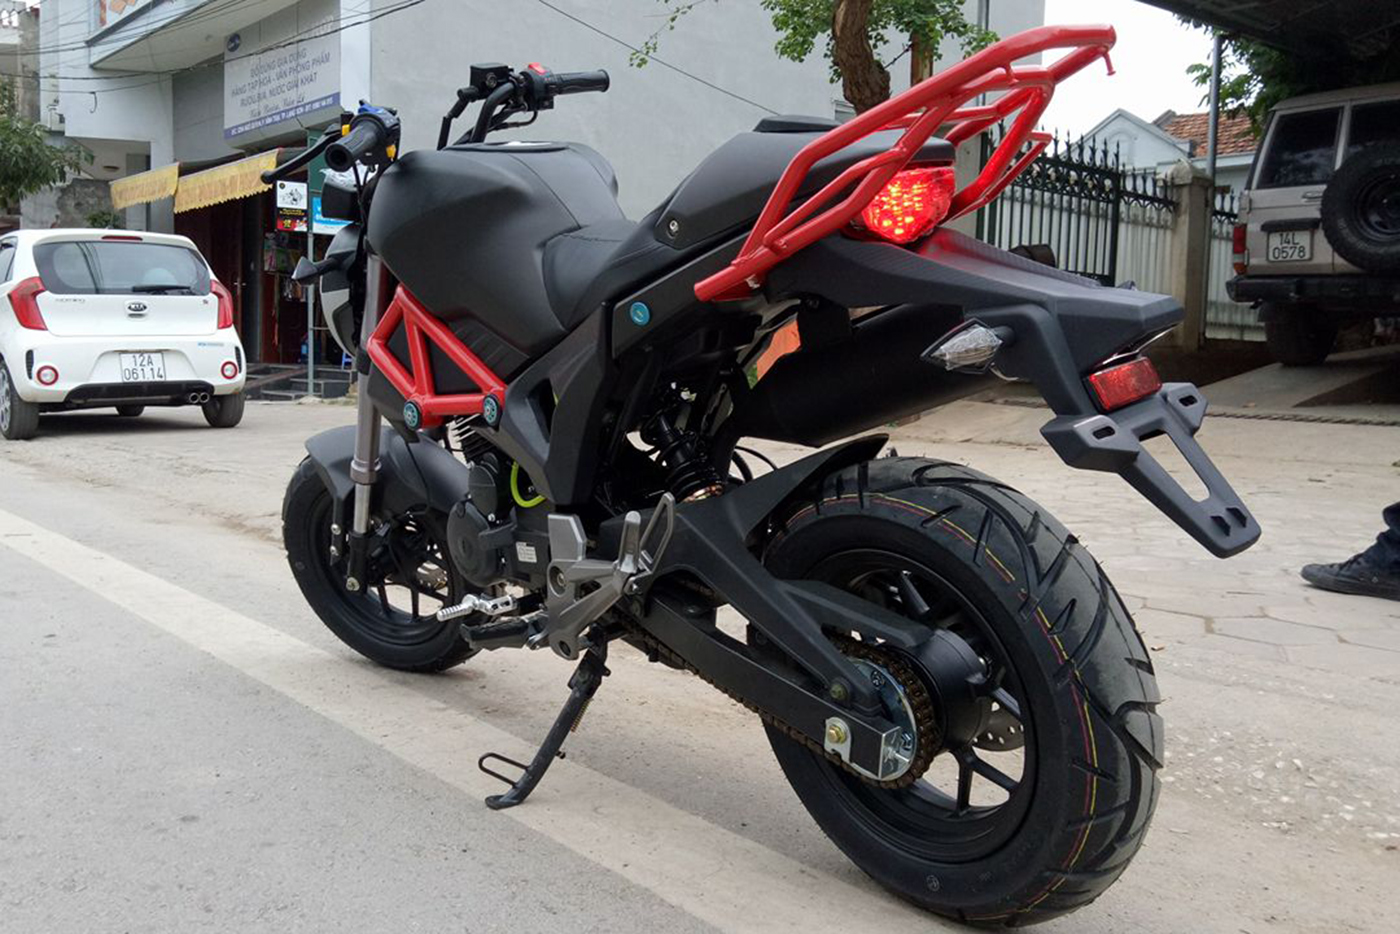 Đại lý Ducati Mini Monster 110  Giá Rẻ nhất Việt Nam  Xe Bảo Nam chuẩn bị  về Benelli TNT 125cc phục vụ a e nha  Facebook